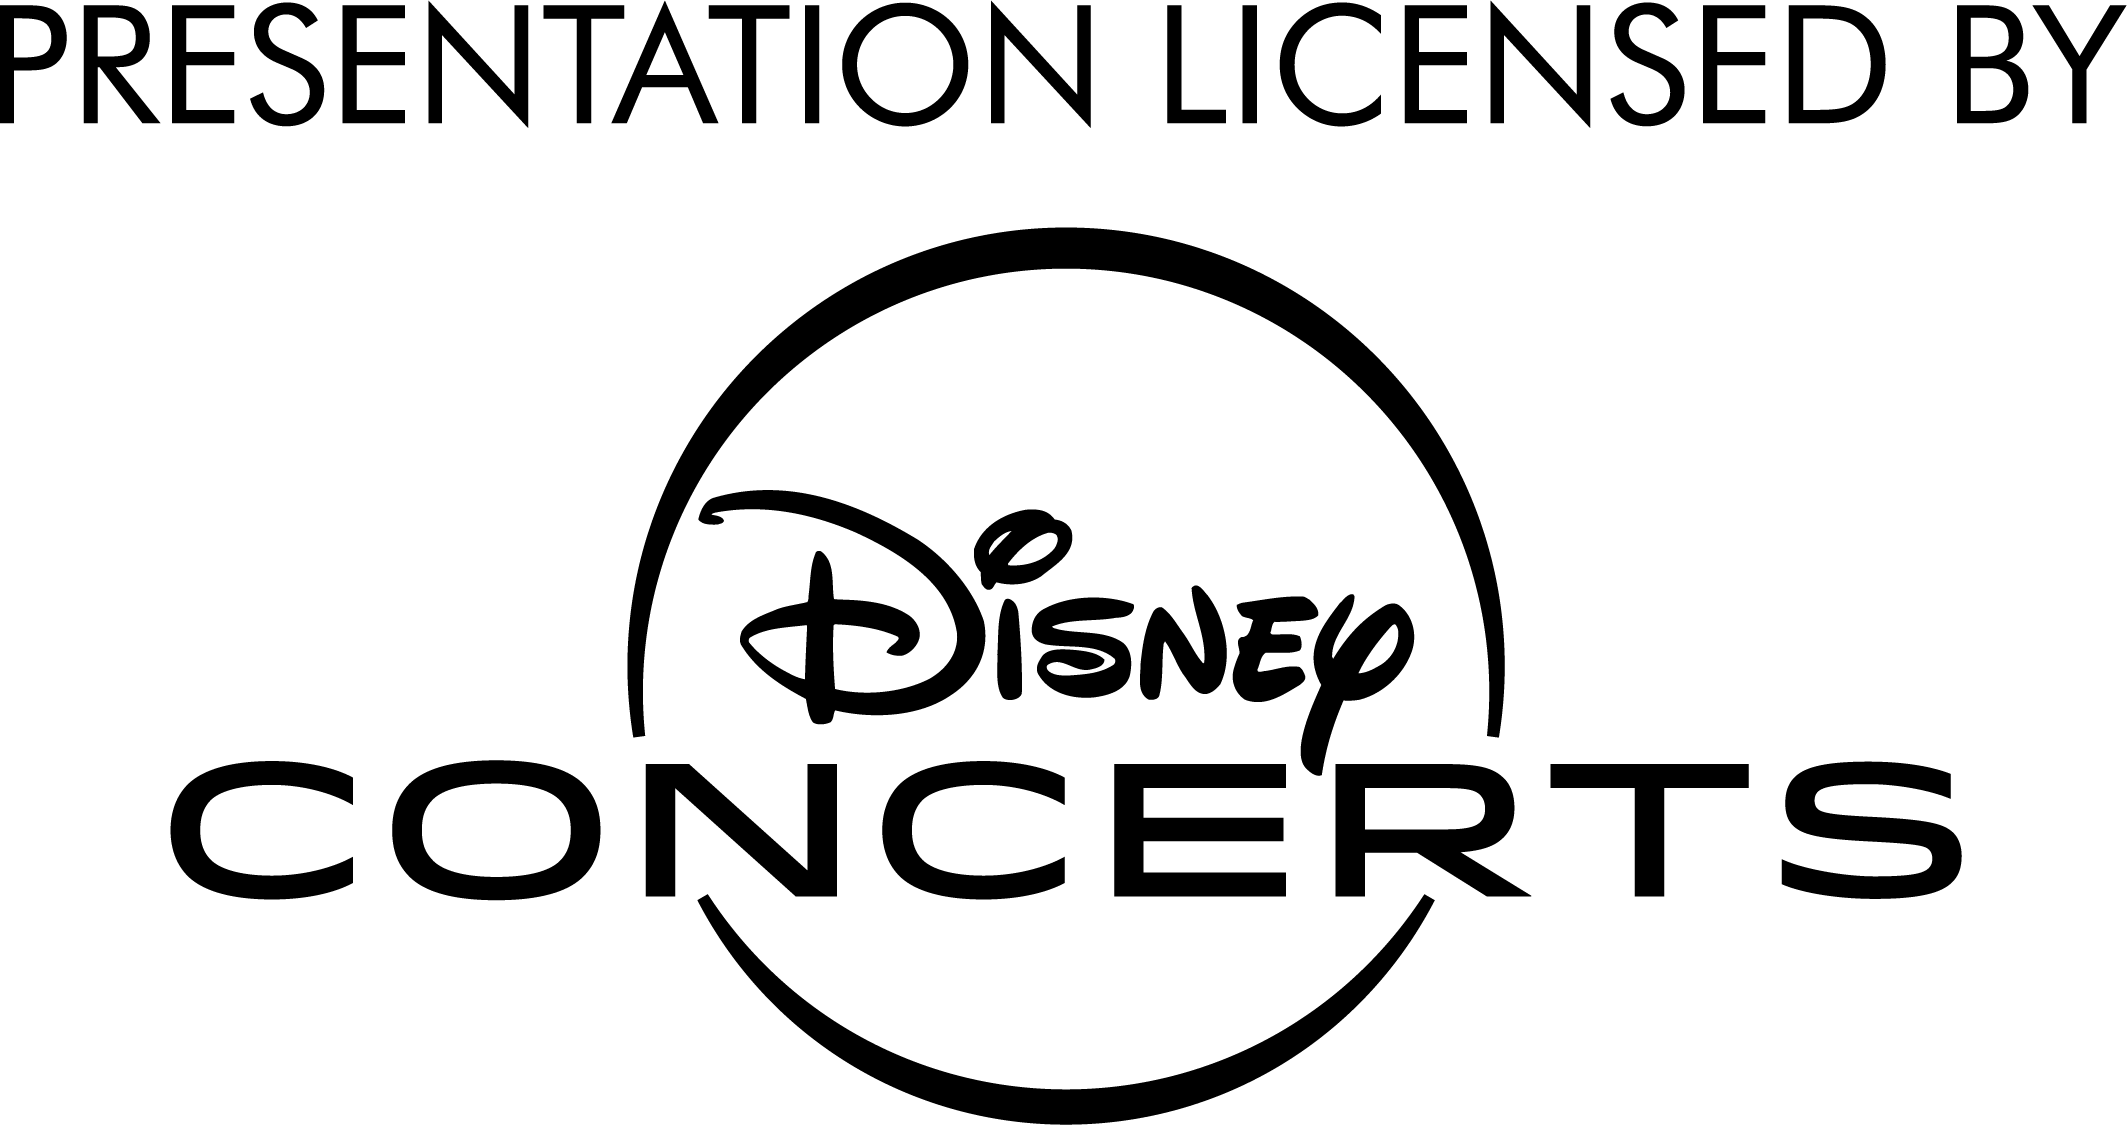 DisneyConcerts_logo_black.png